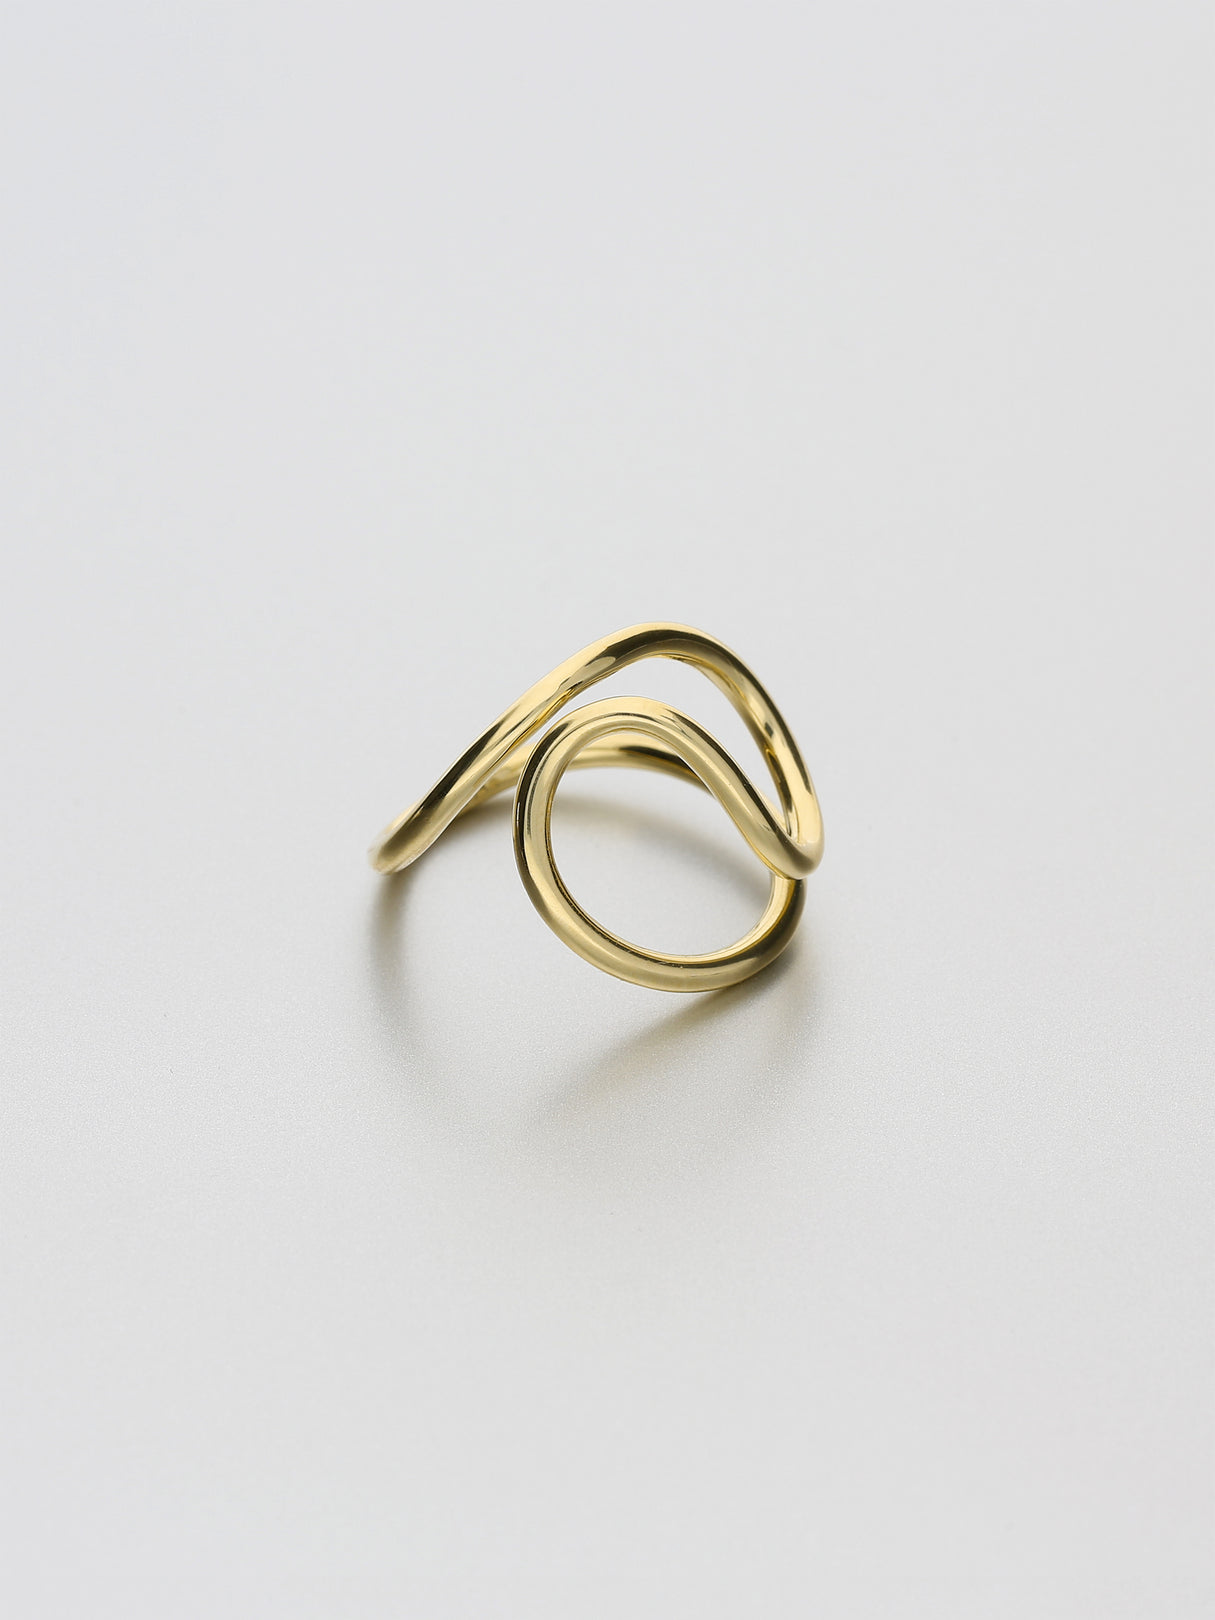 Aeon Ring, II Yellow gold